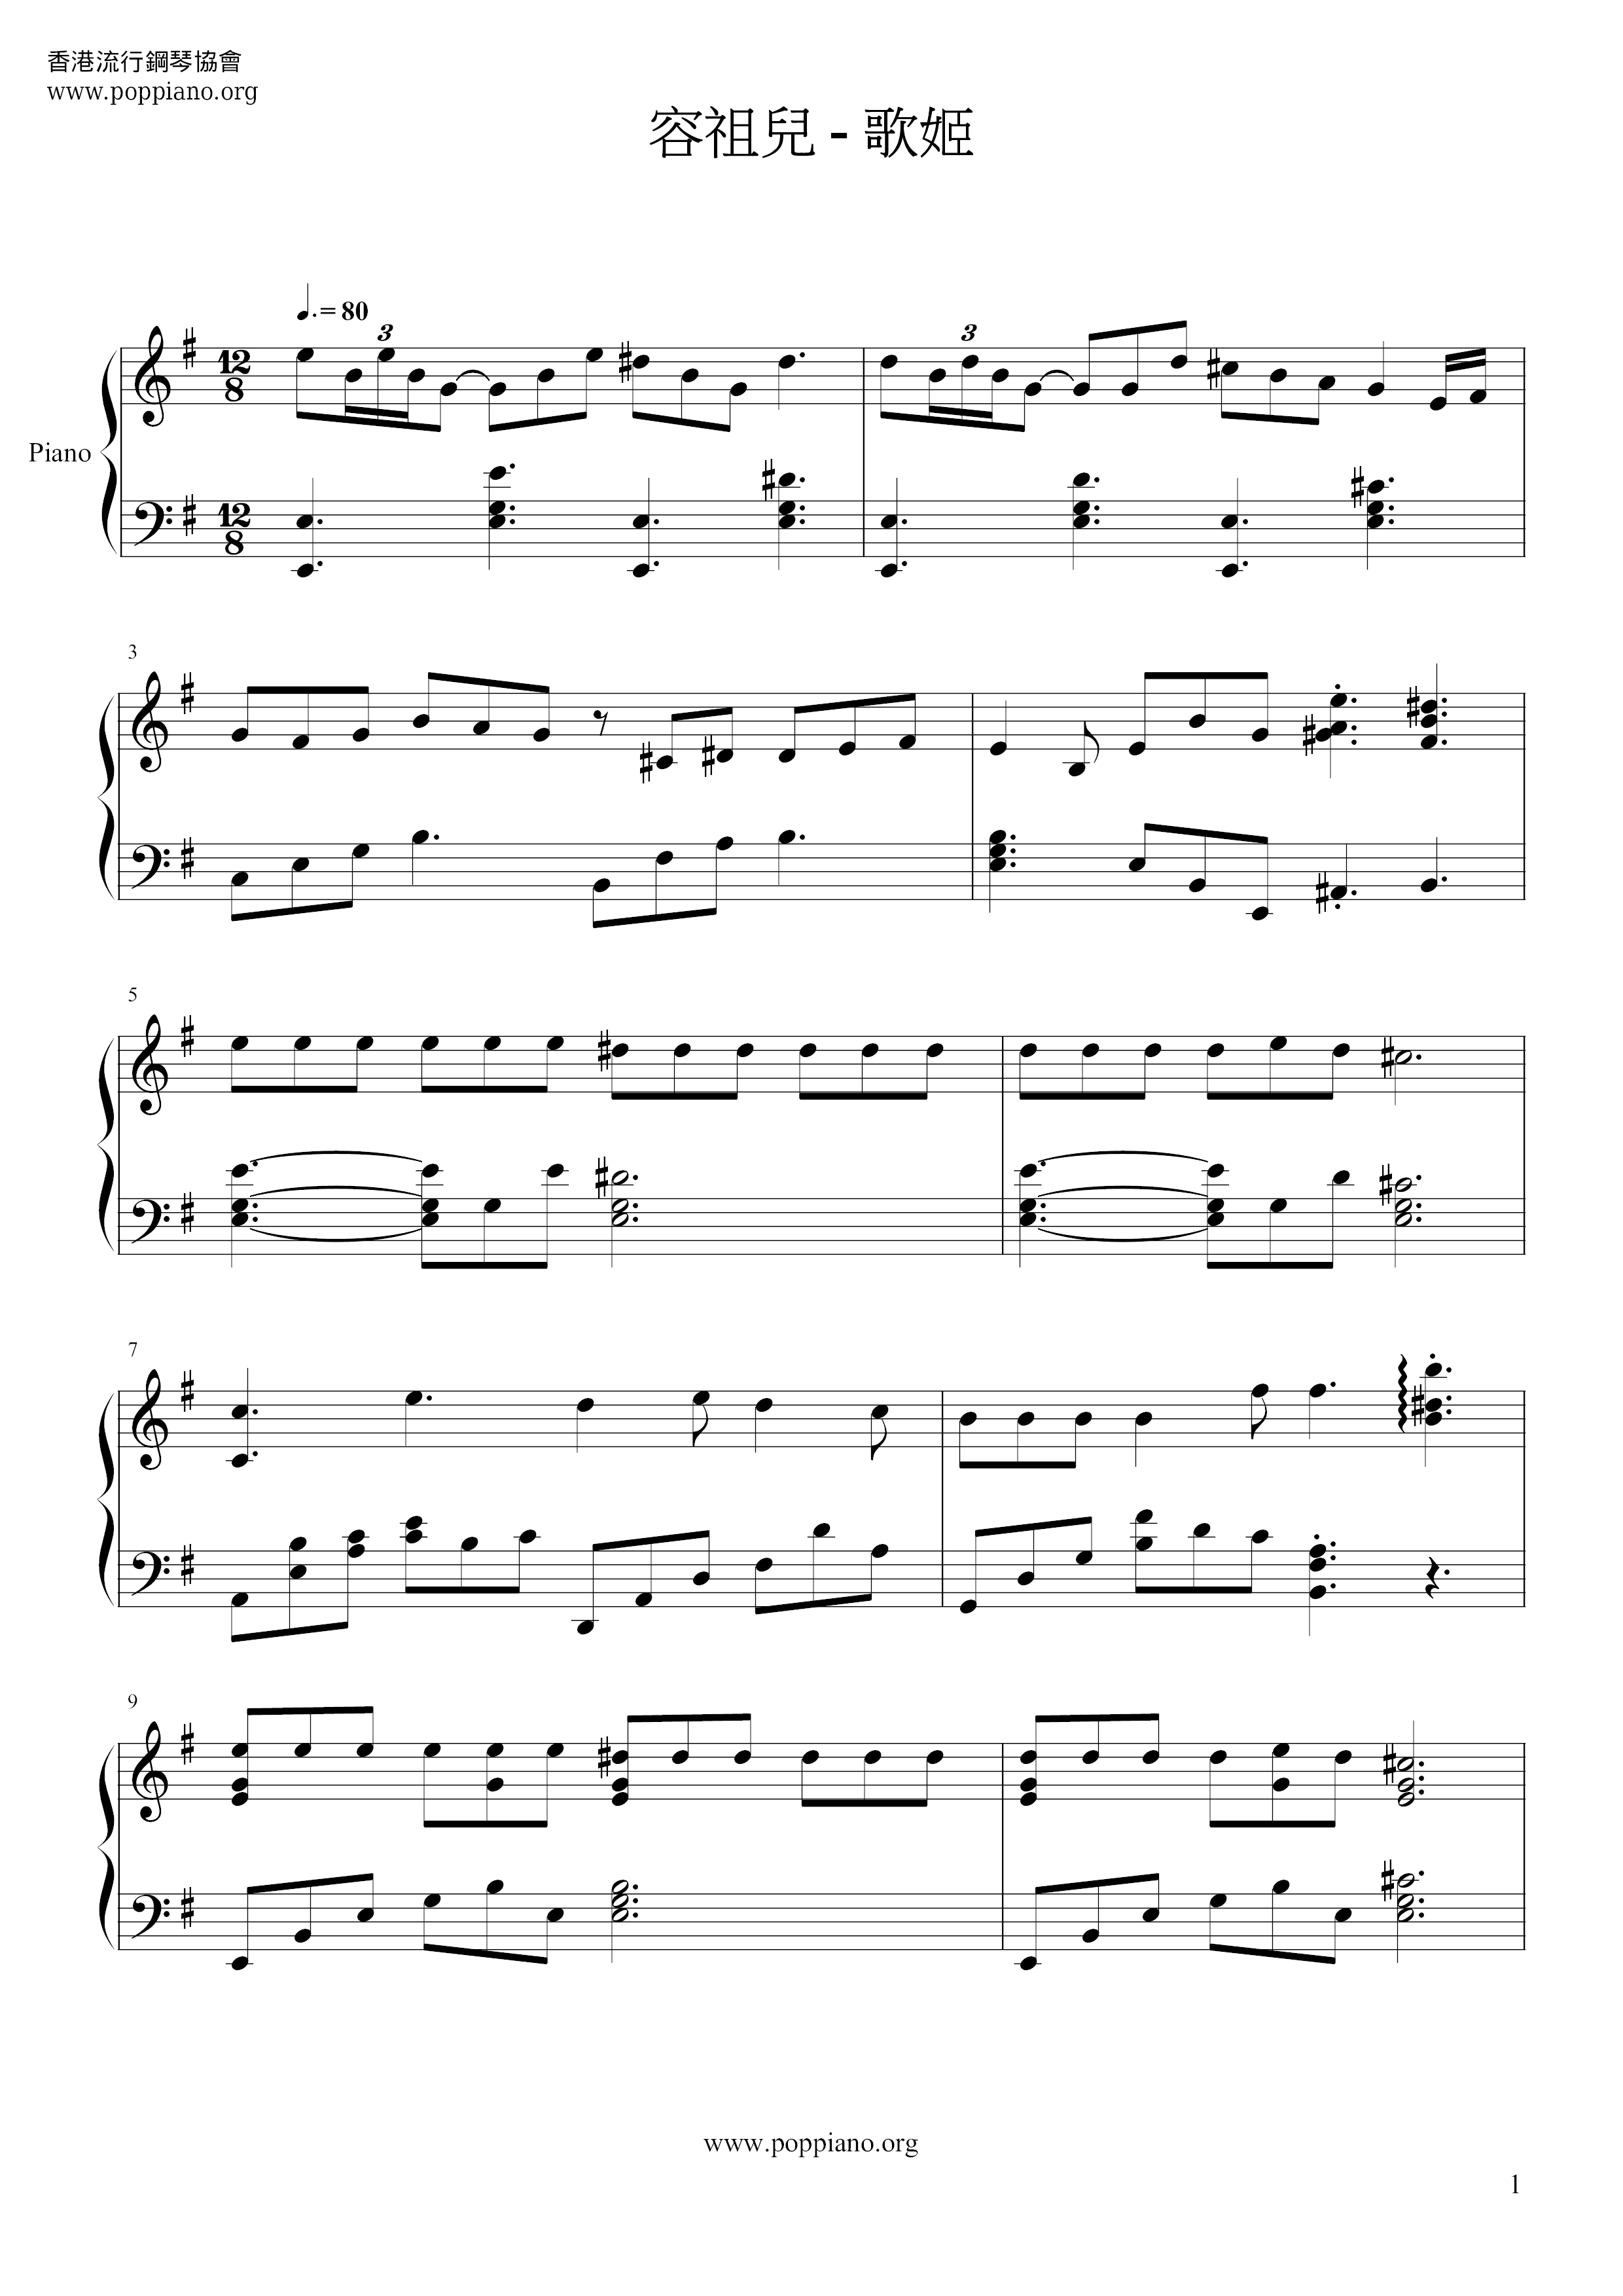 Singer Score